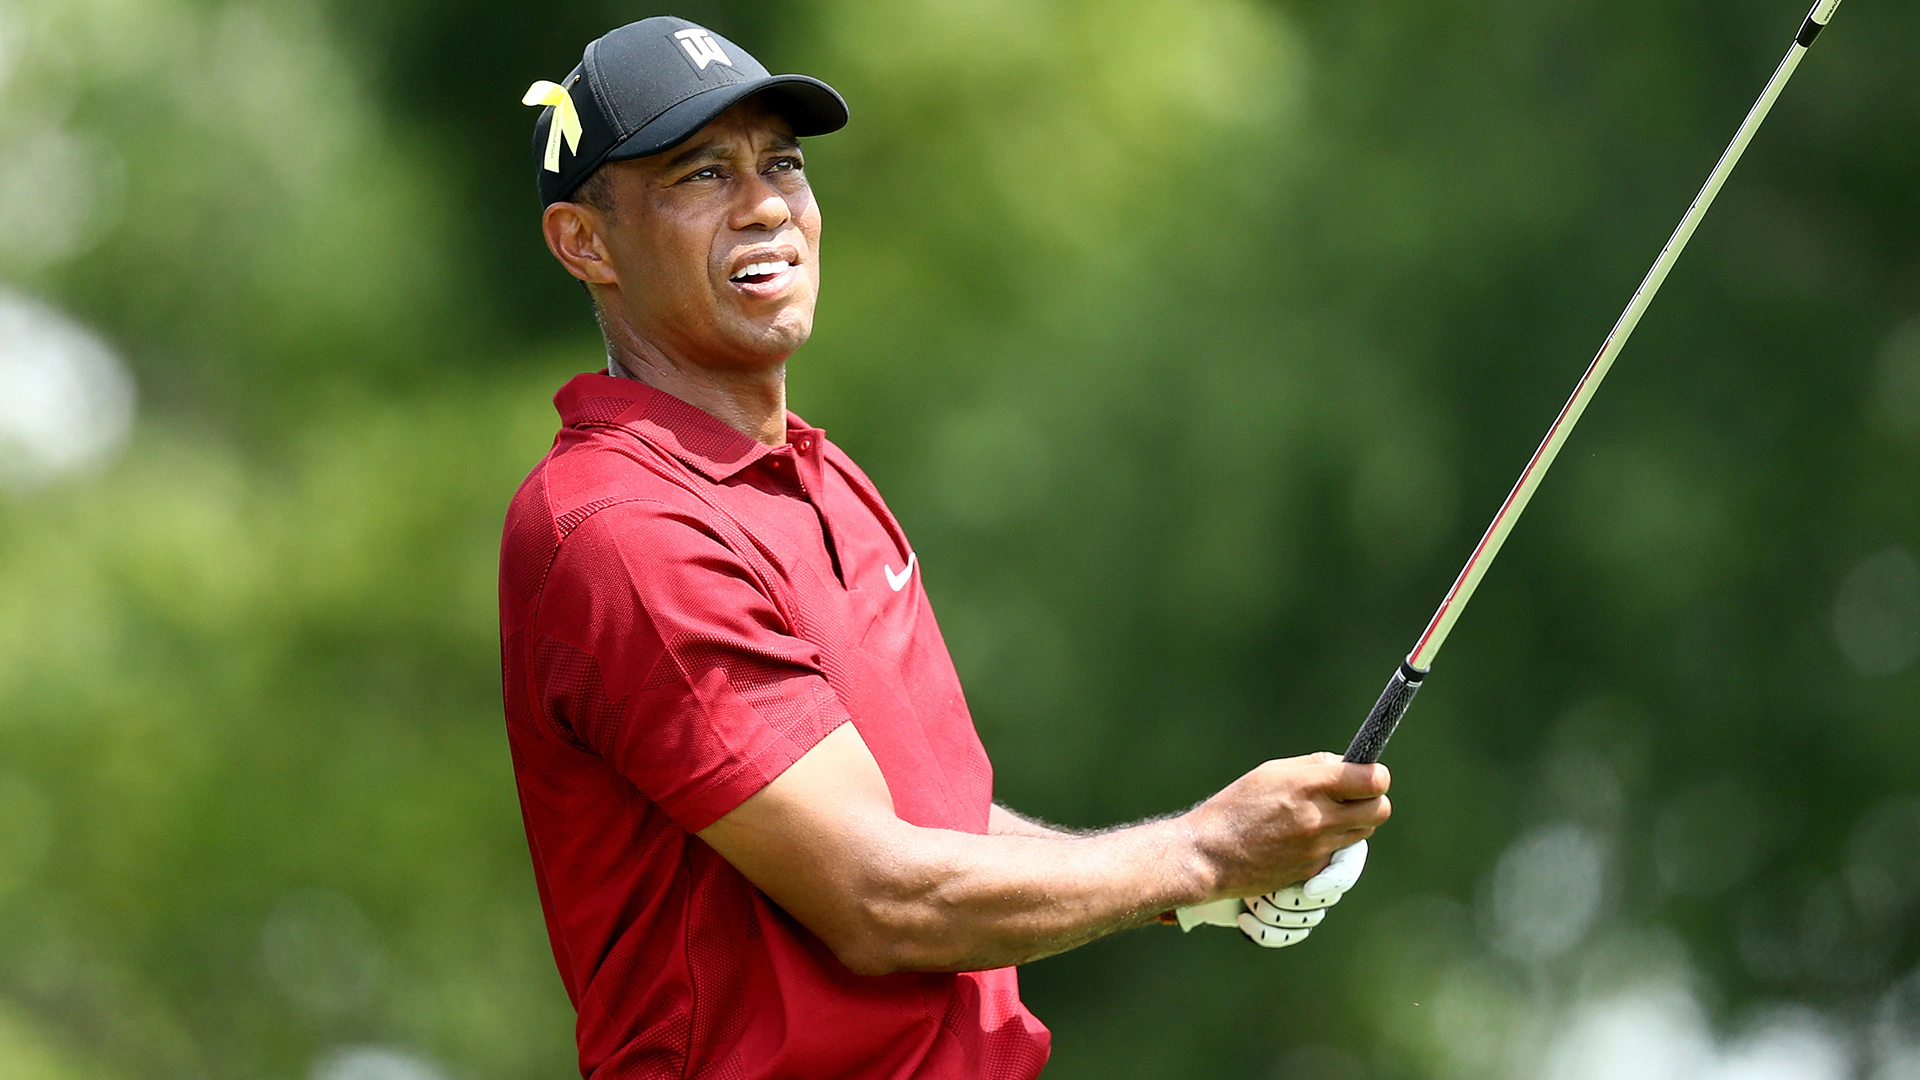 Tiger Woods skipping next week’s WGC-FedEx St. Jude